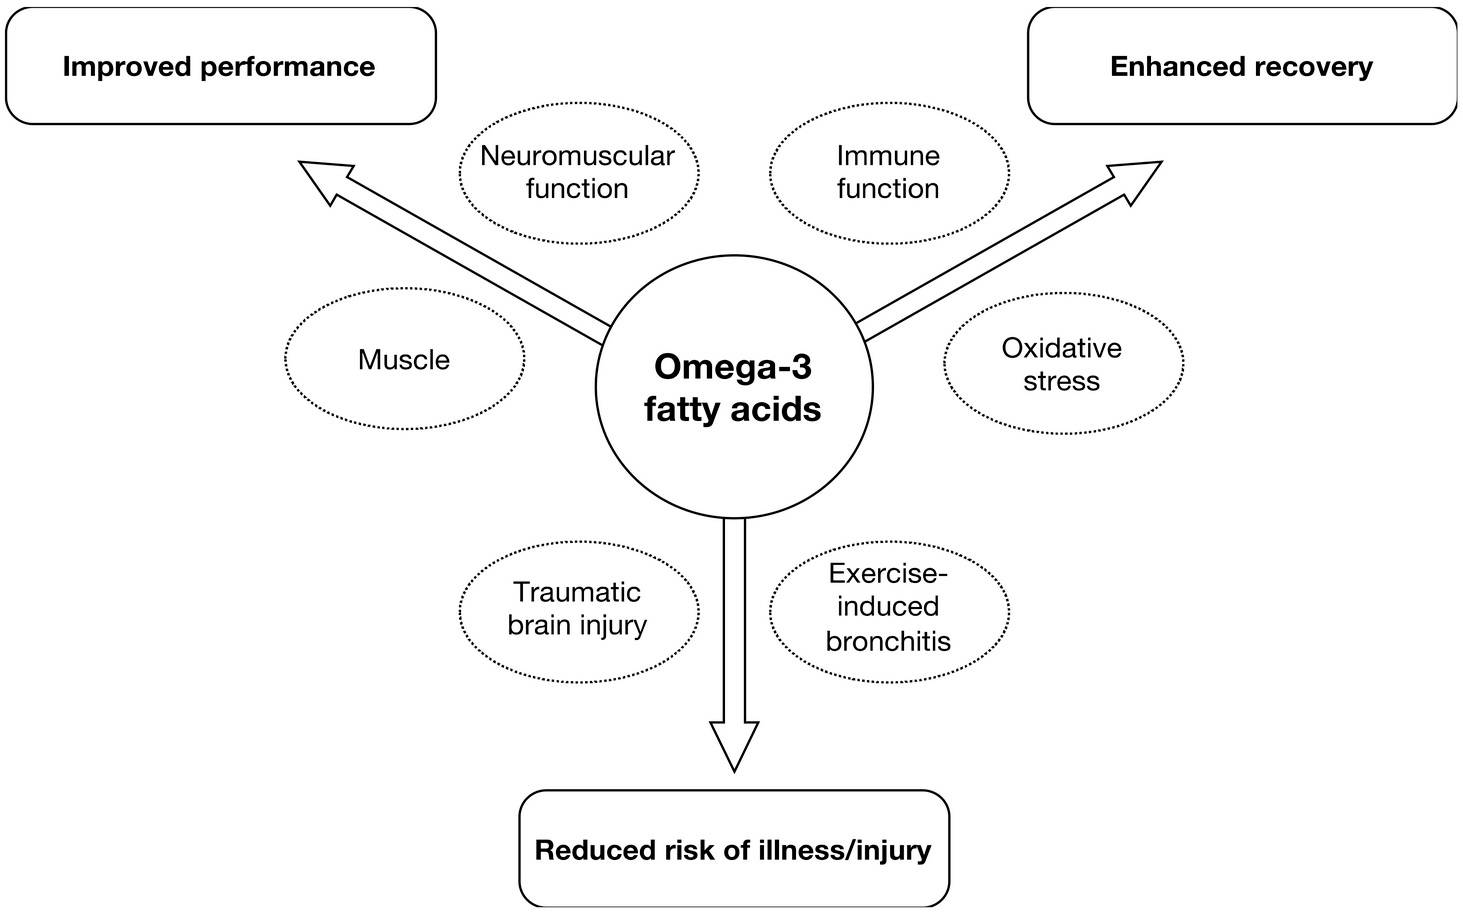 Bereiche von Interesse für die Supplementierung mit Omega 3 Fettsäuren ( Eicosapentaensäure [EPA] und Docosahexaensäure [DHA]) in der Sporternährung bei Athleten und Amateuren. (Bildquelle: Thielecke & Blannin, 2020)